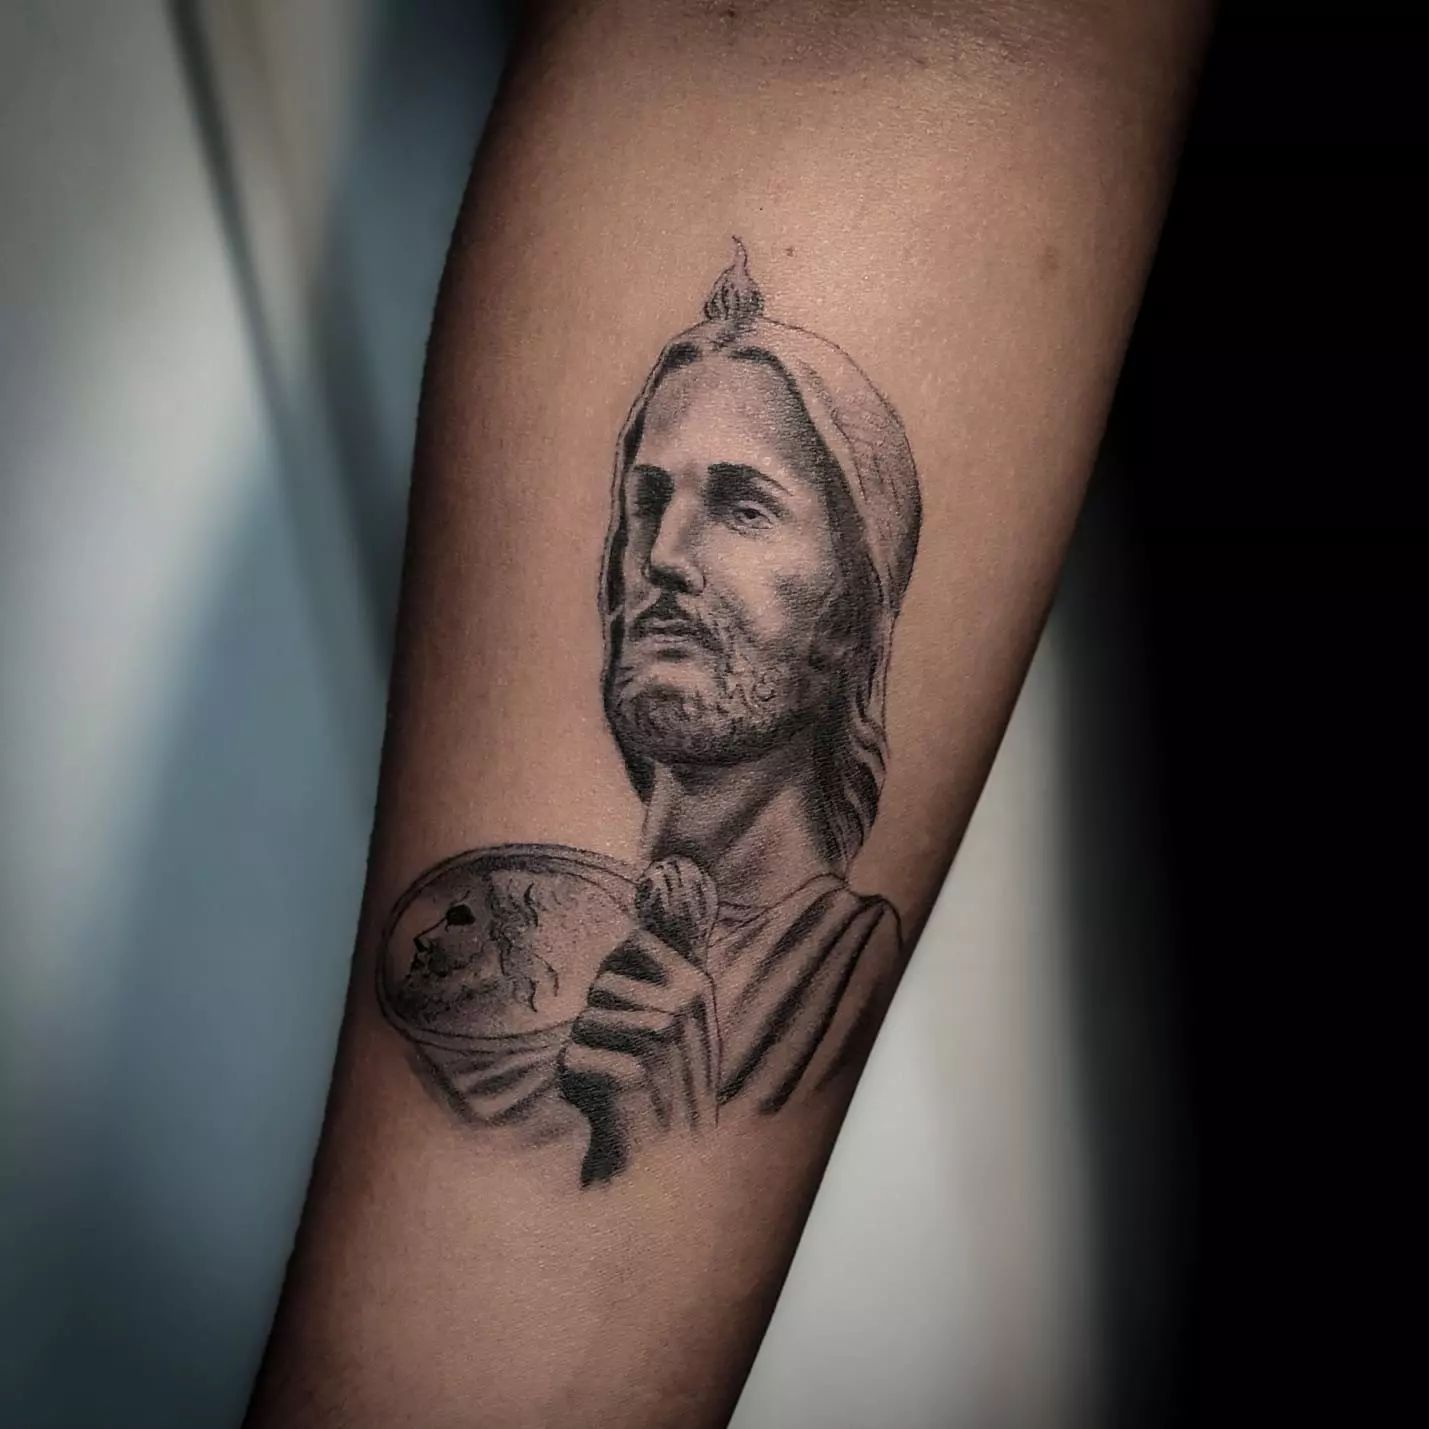 Tatuaje de San Judas en negro y gris